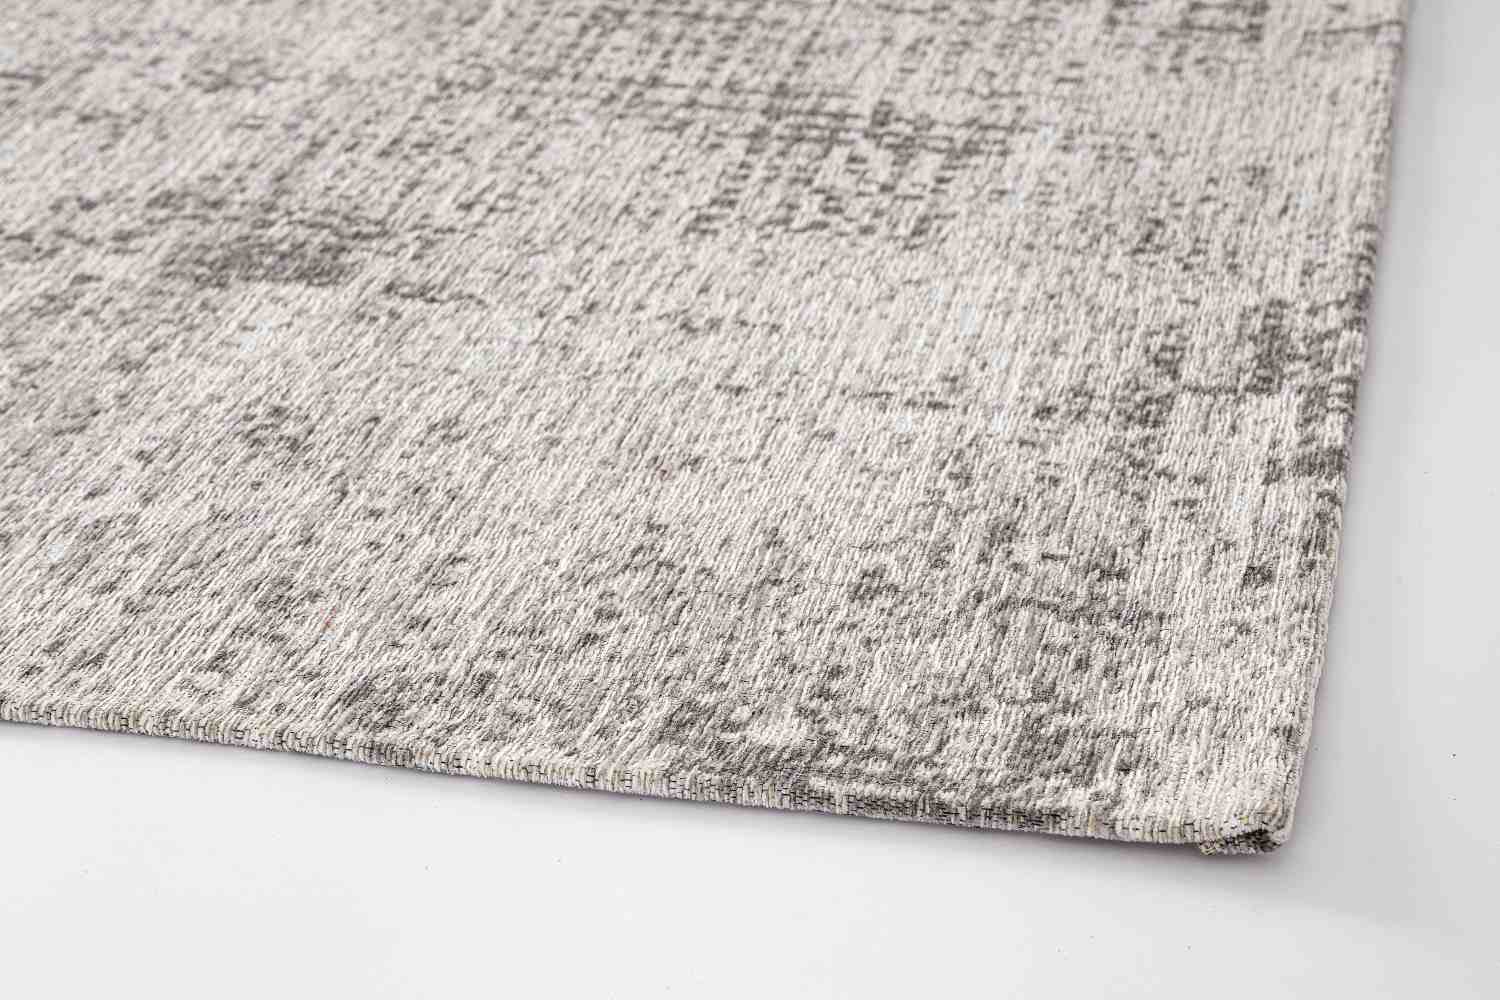 Der Teppich Suri überzeugt mit seinem modernen Design. Gefertigt wurde die Vorderseite aus 50% Chenille, 30% Polyester und 20% Baumwolle, die Rückseite ist aus Latex. Der Teppich besitzt eine silbernen Farbton und die Maße von 155x230 cm.